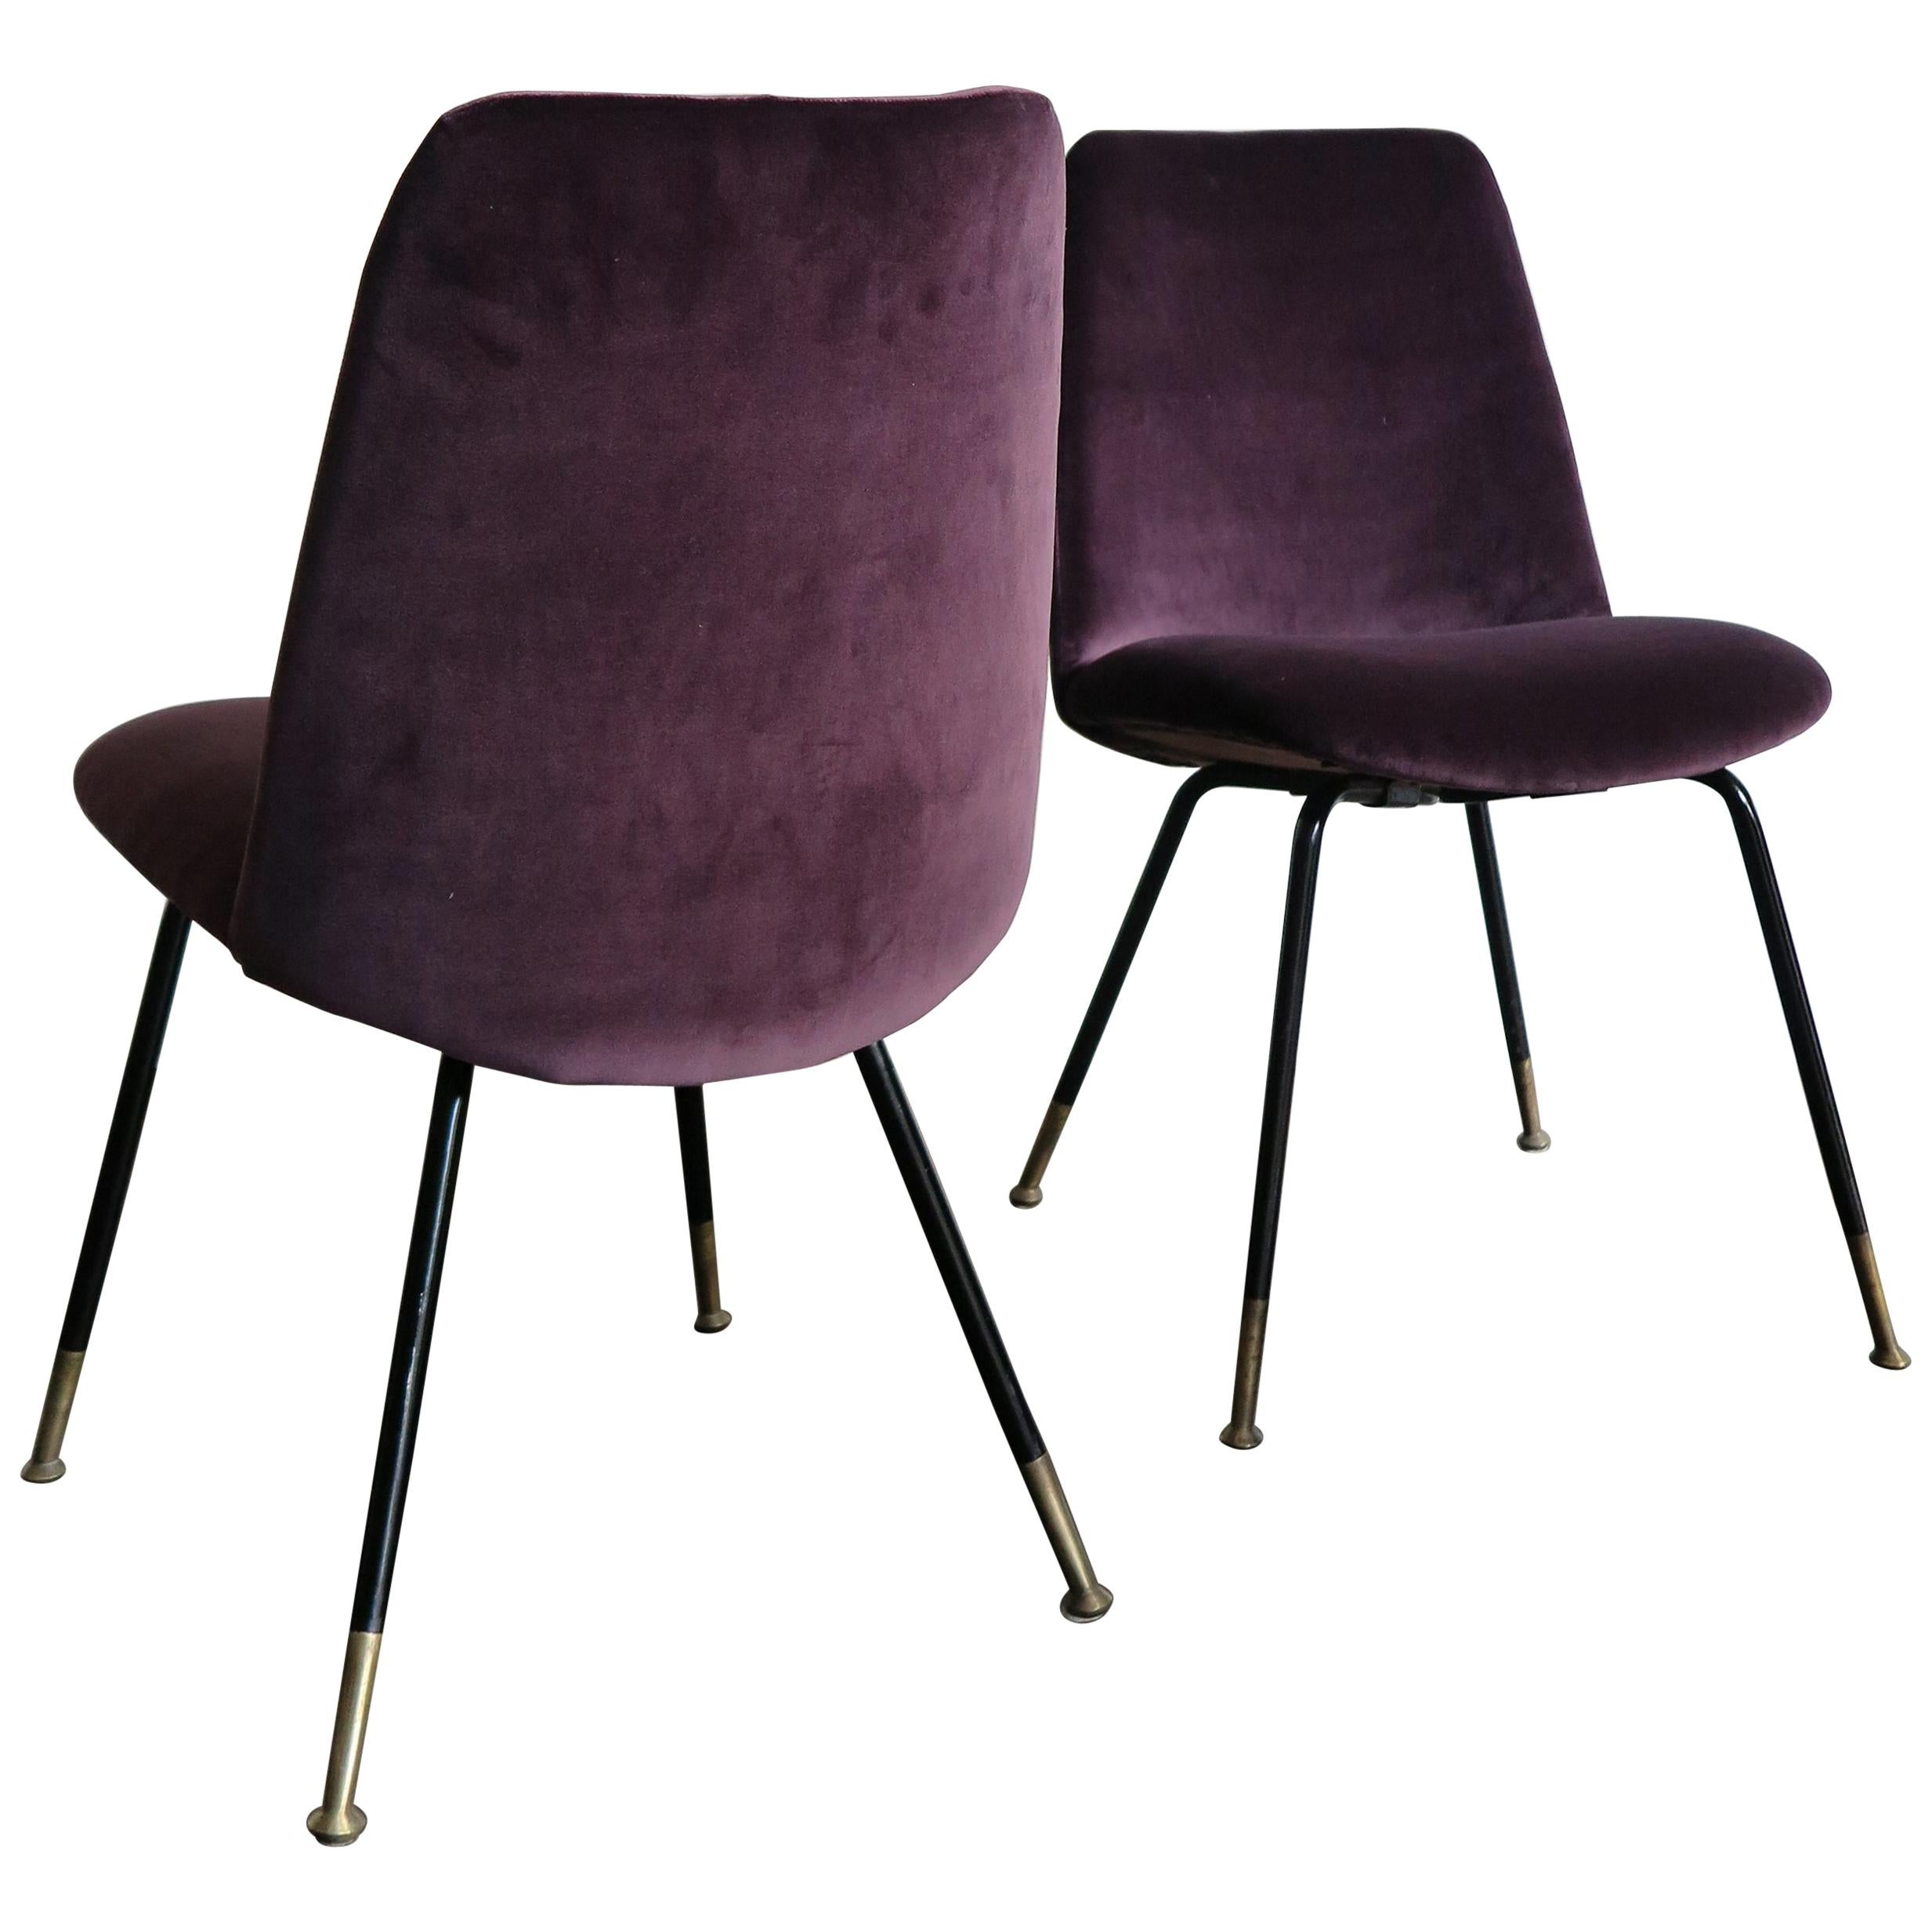 Italian Mid-Century Modern Design Velvet Chairs Armchairs, 1950s